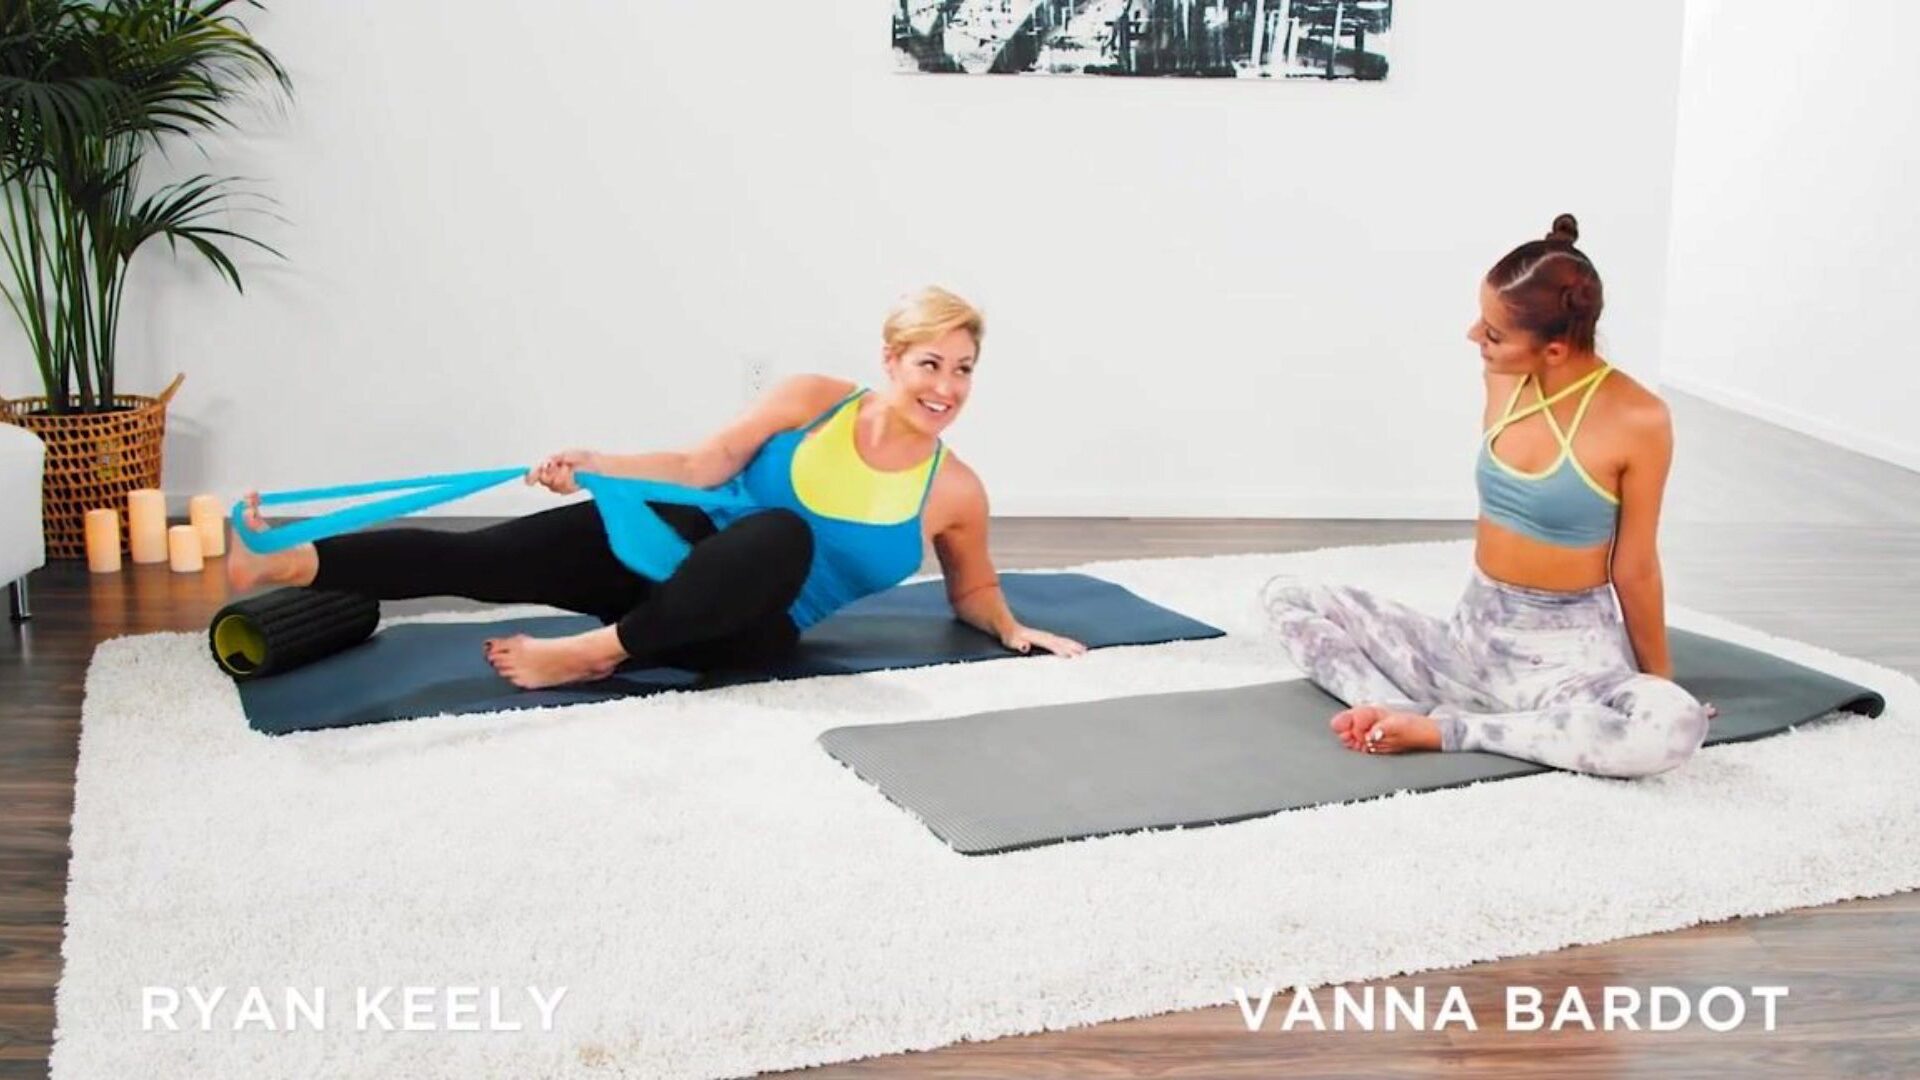 mommysgirl vanna bardot heeft een hardcore vingeren yoga training met hete milf ryan keely